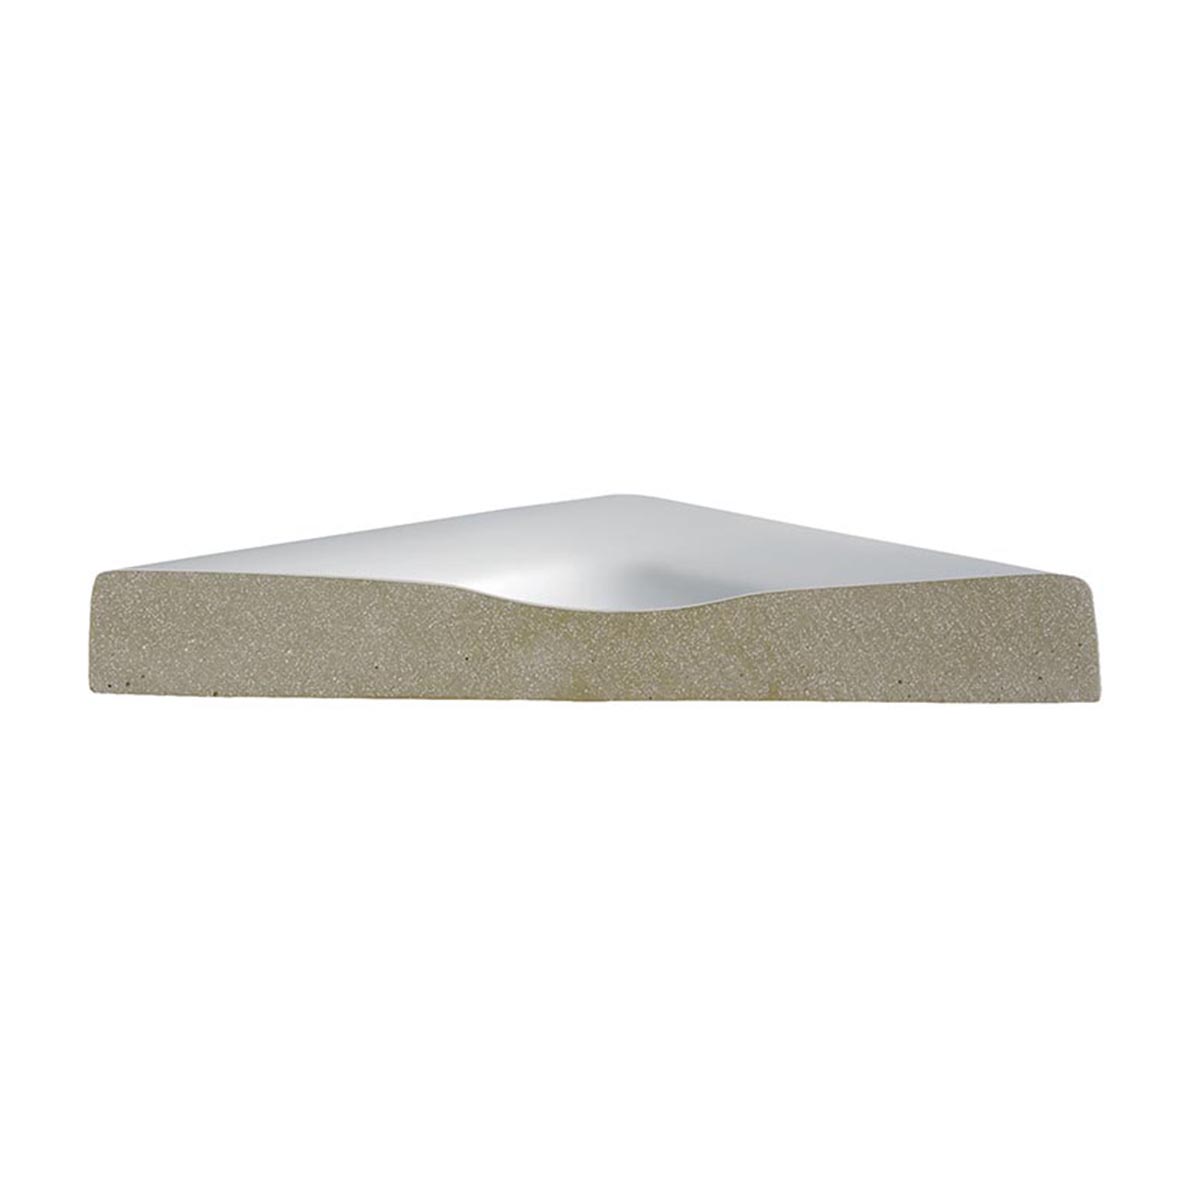 HSK Marmor-Polymer Quadrat Duschwanne plan-Weiß-120 x 120 cm-mit AntiSlip-Beschichtung-ohne Aquaproof-Dichtset